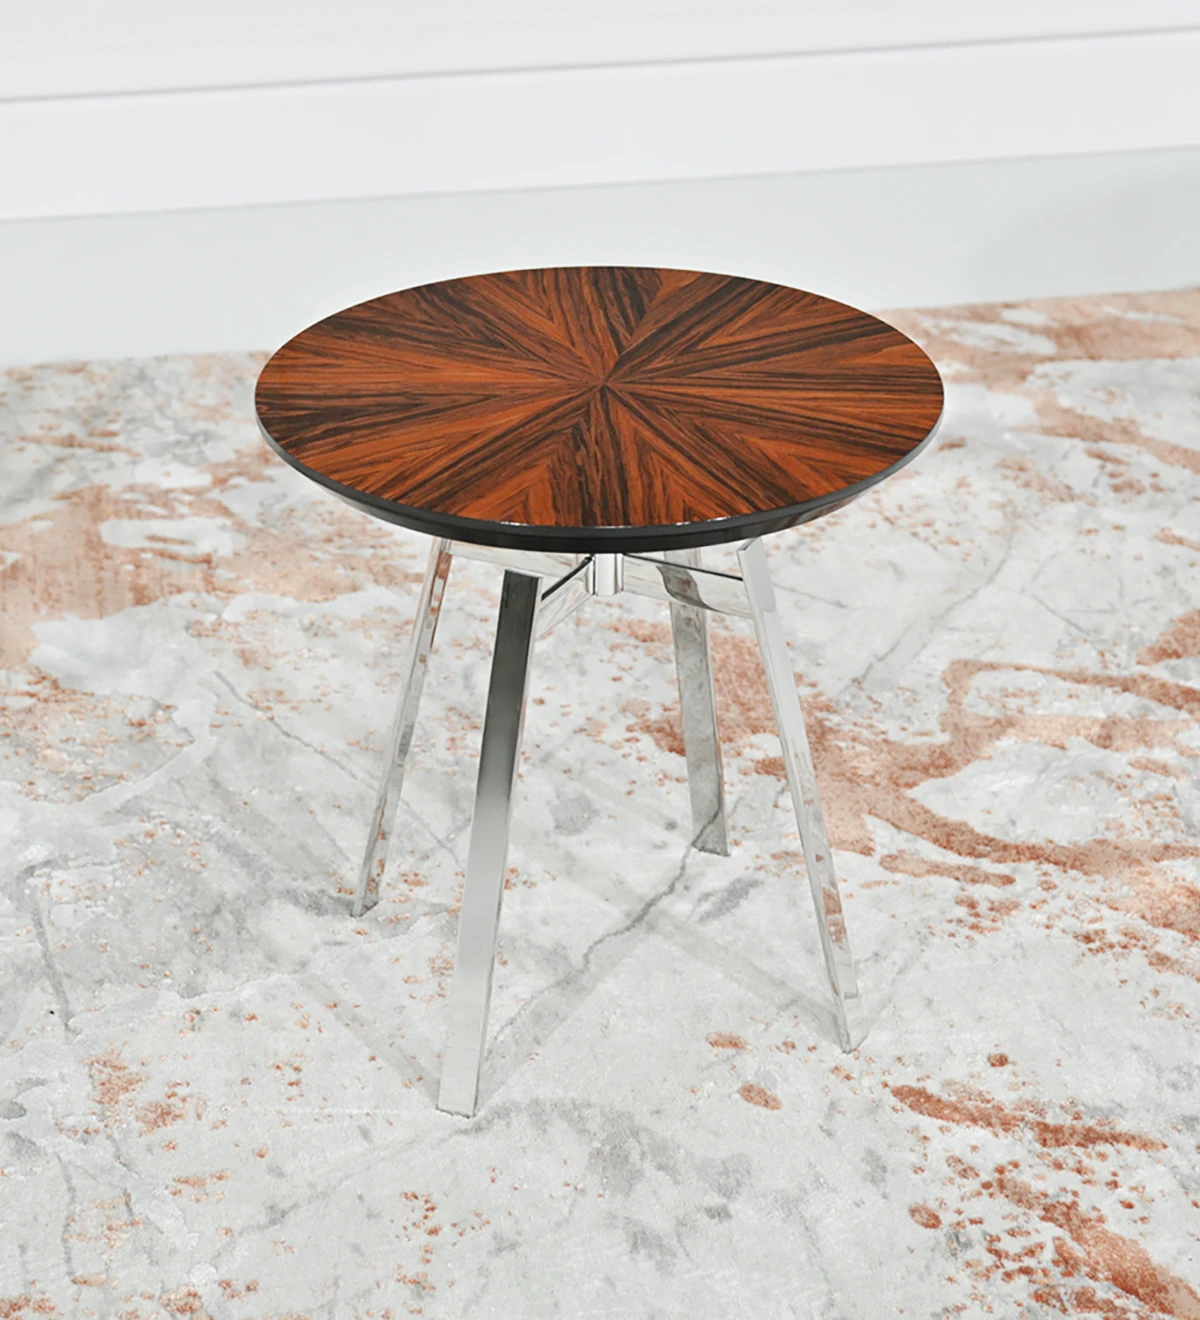 Table d'Appui ronde, avec plateau en palissandre brillant et pied en acier inoxydable.